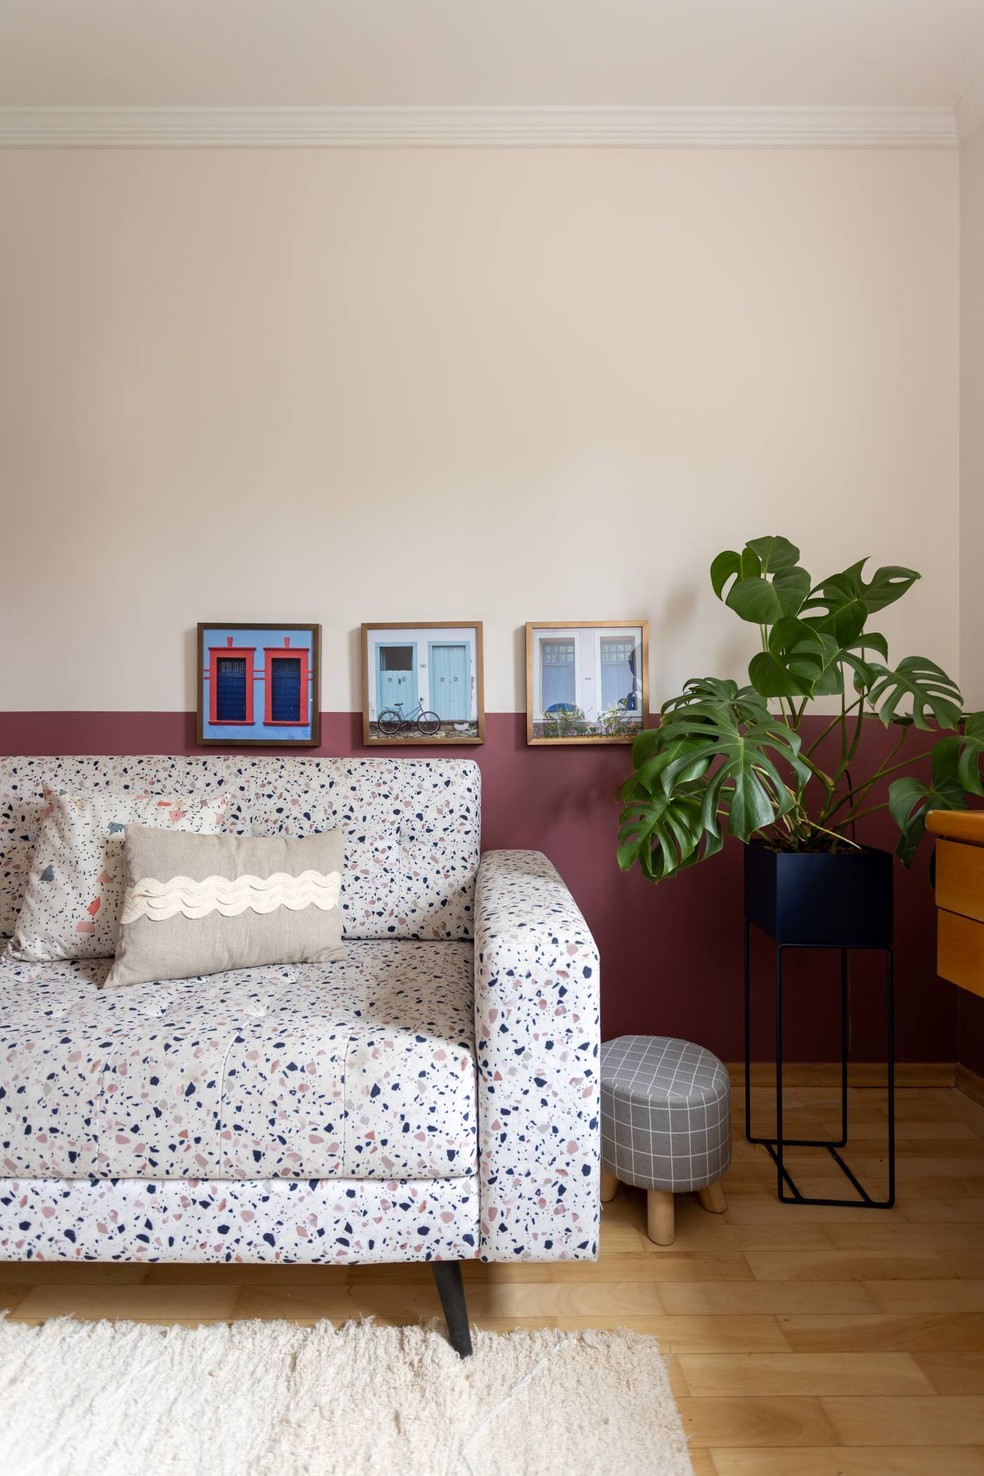 ESCRITÓRIO | O sofá com revestimento que lembra granilite veio do antigo escritório da moradora e tem valor afetivo, assim como a planta costela-de-adão — Foto: Leila Viegas / Divulgação